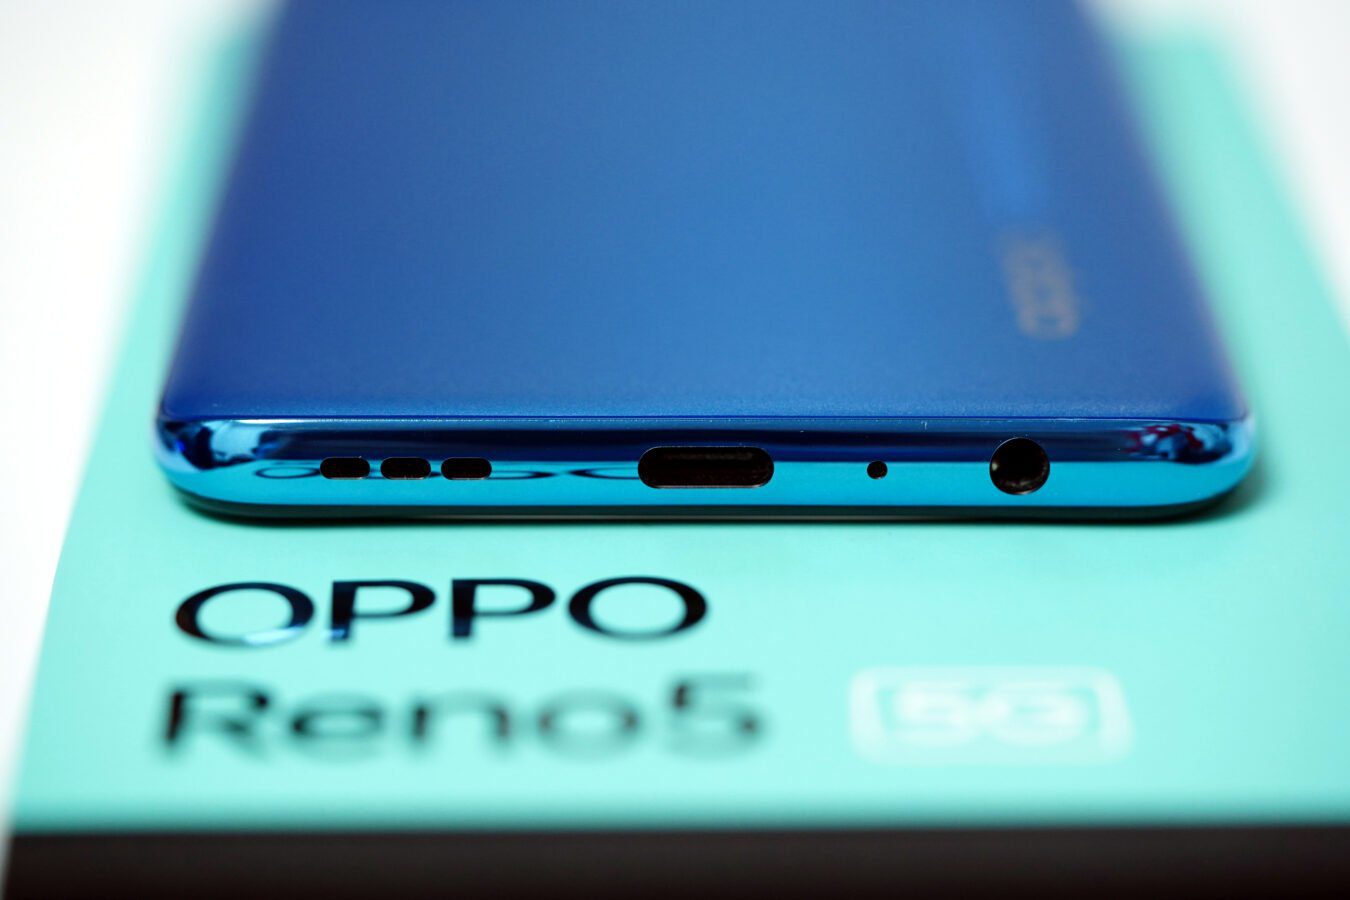 Oppo startet mit April-Aktionen. Wir werden Smartphones der Reno- und "A"-Serie günstiger kaufen 170